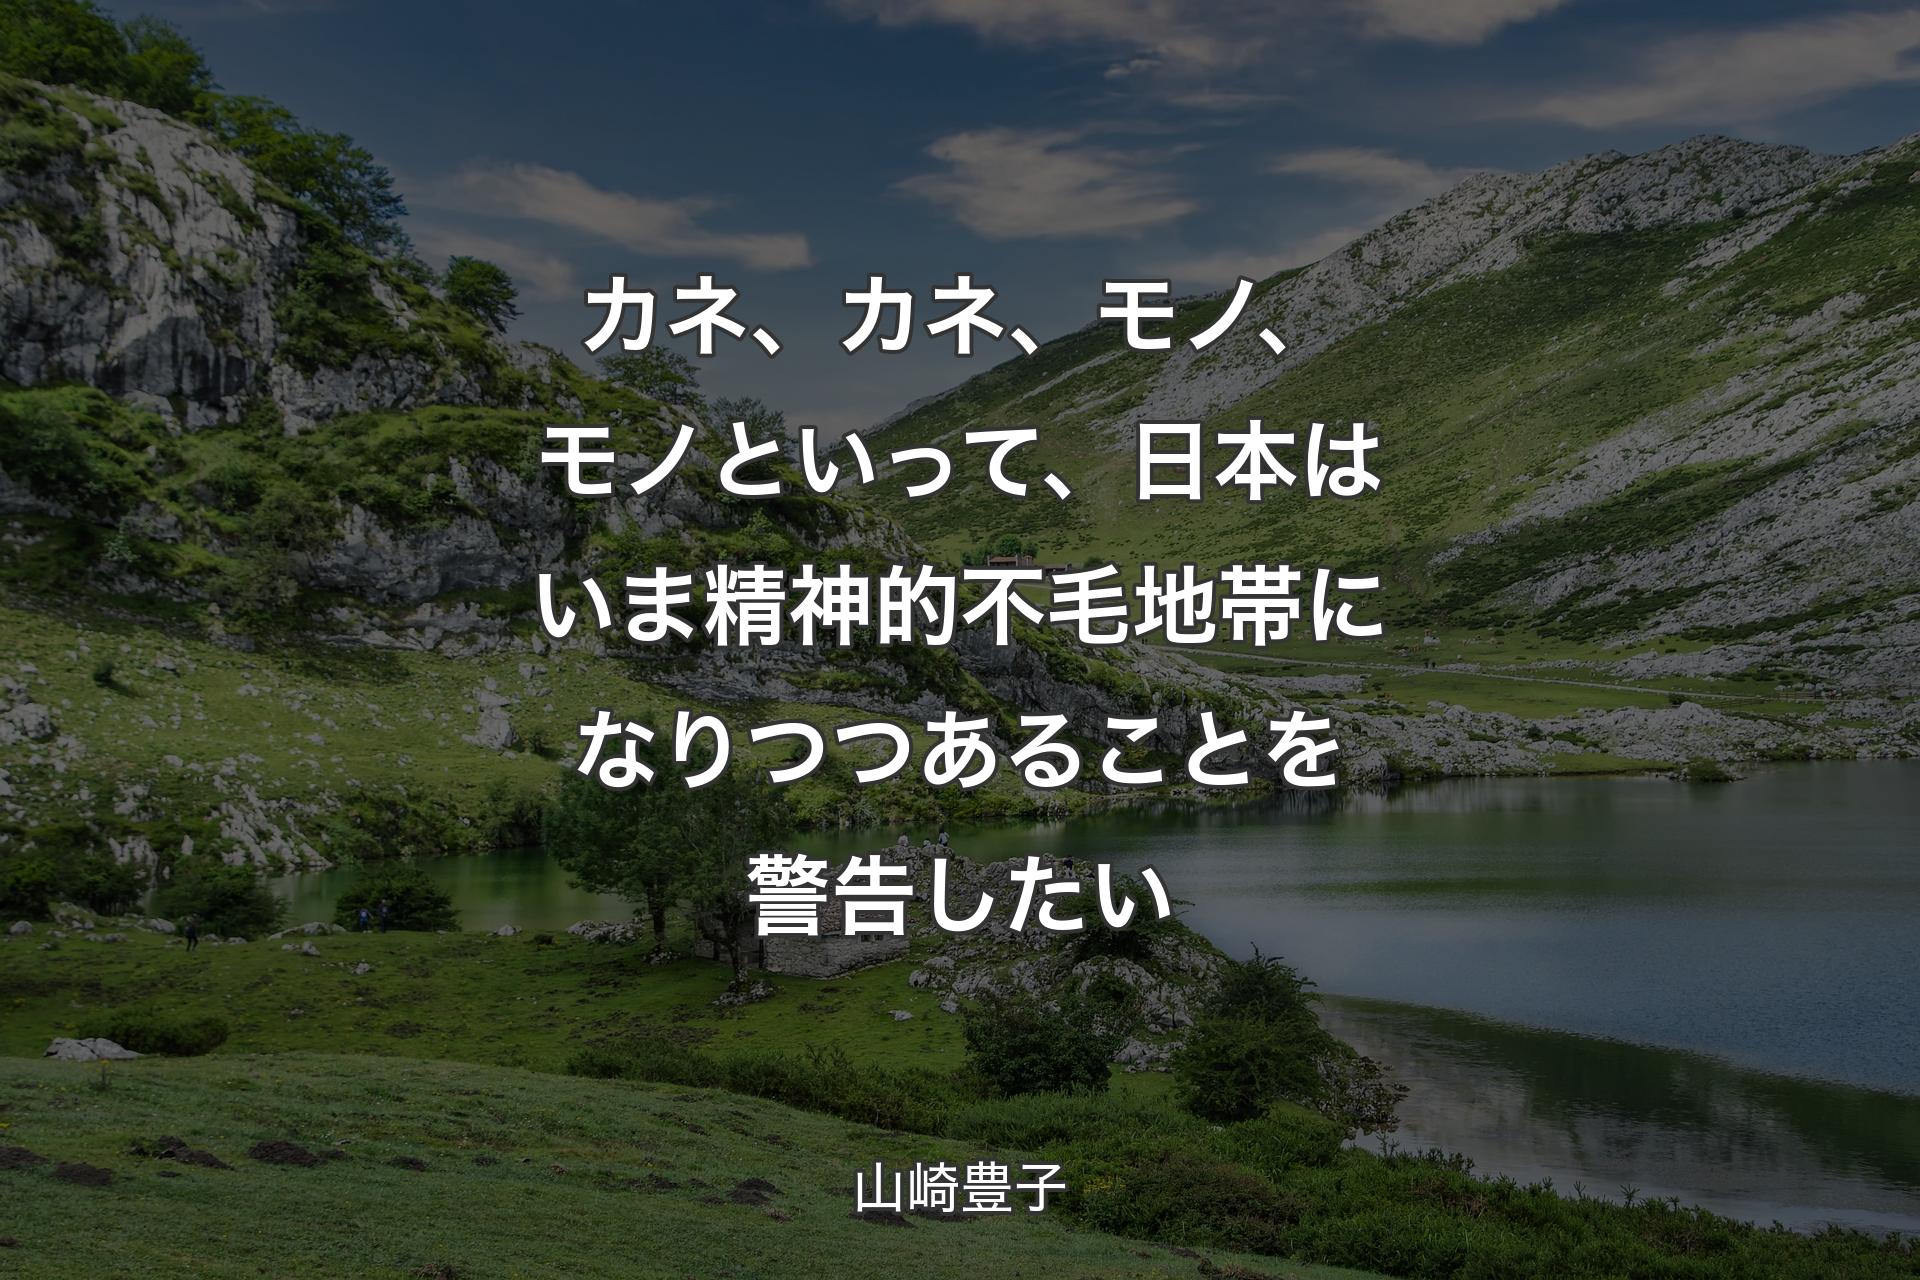 【背景1】カネ、カネ、モノ、モノといって、日本はいま精神的不毛地帯になりつつあることを警告したい - 山崎豊子